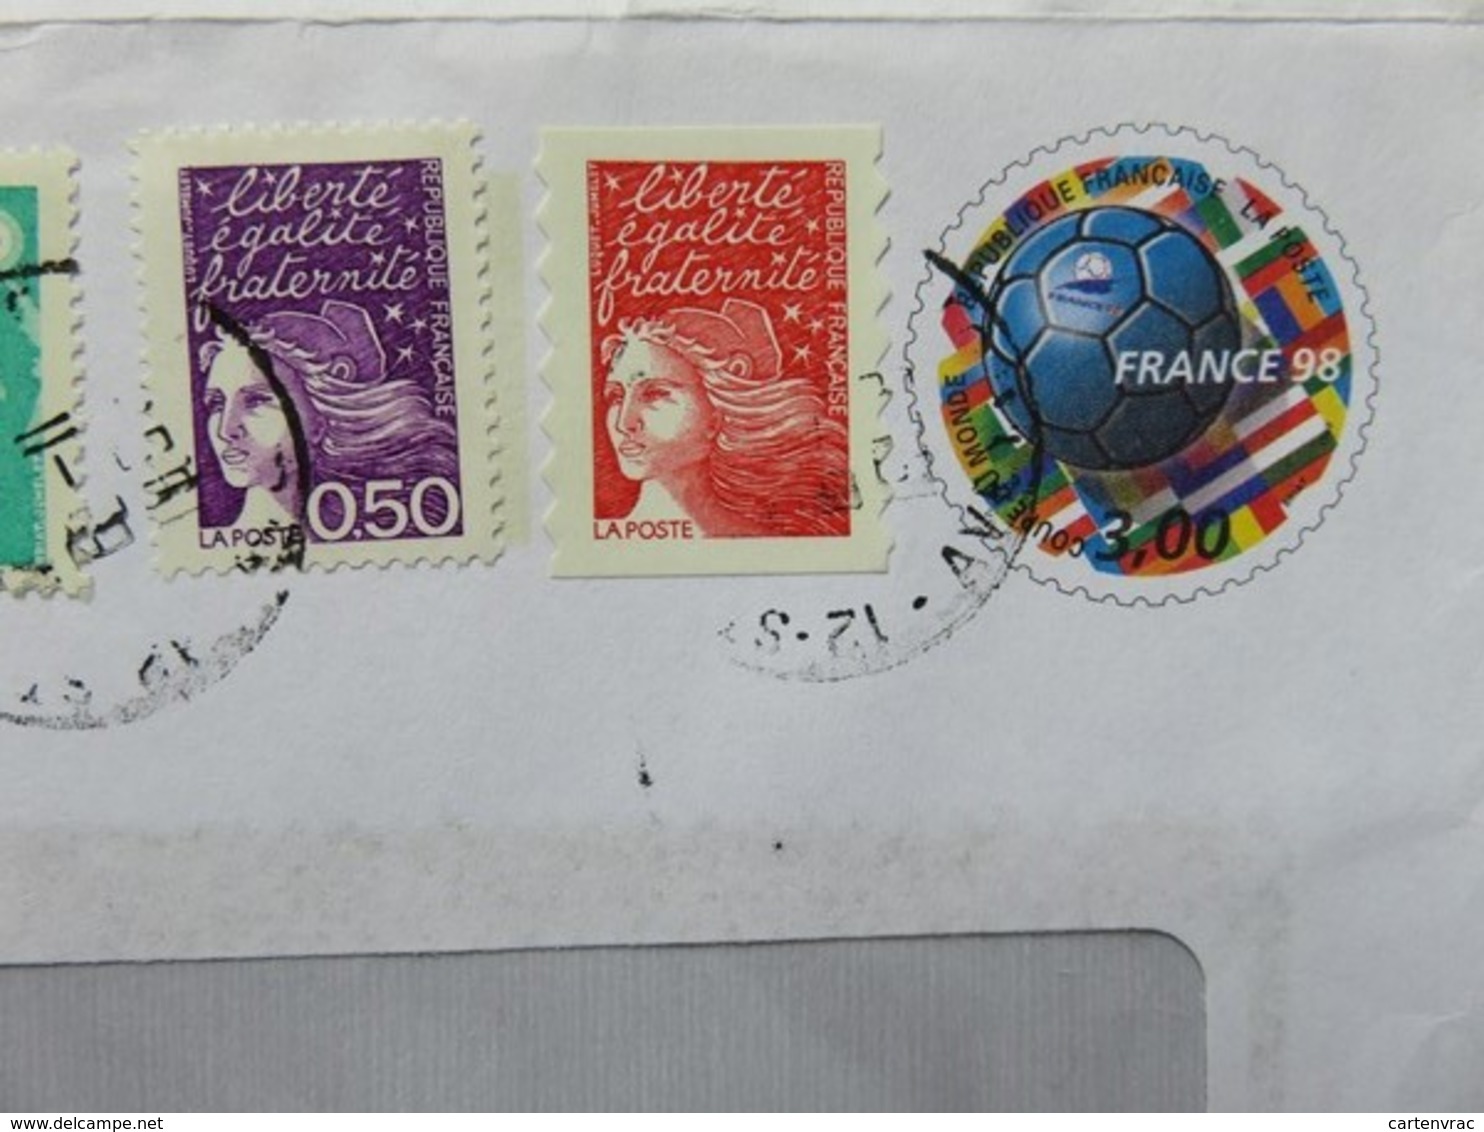 PAP - Entier Postal - Ballon De Briat France 98 - Ets Zuliani - St Affrique - Cachet à Date 06.11.1998 - Footix - PAP: Sonstige (1995-...)